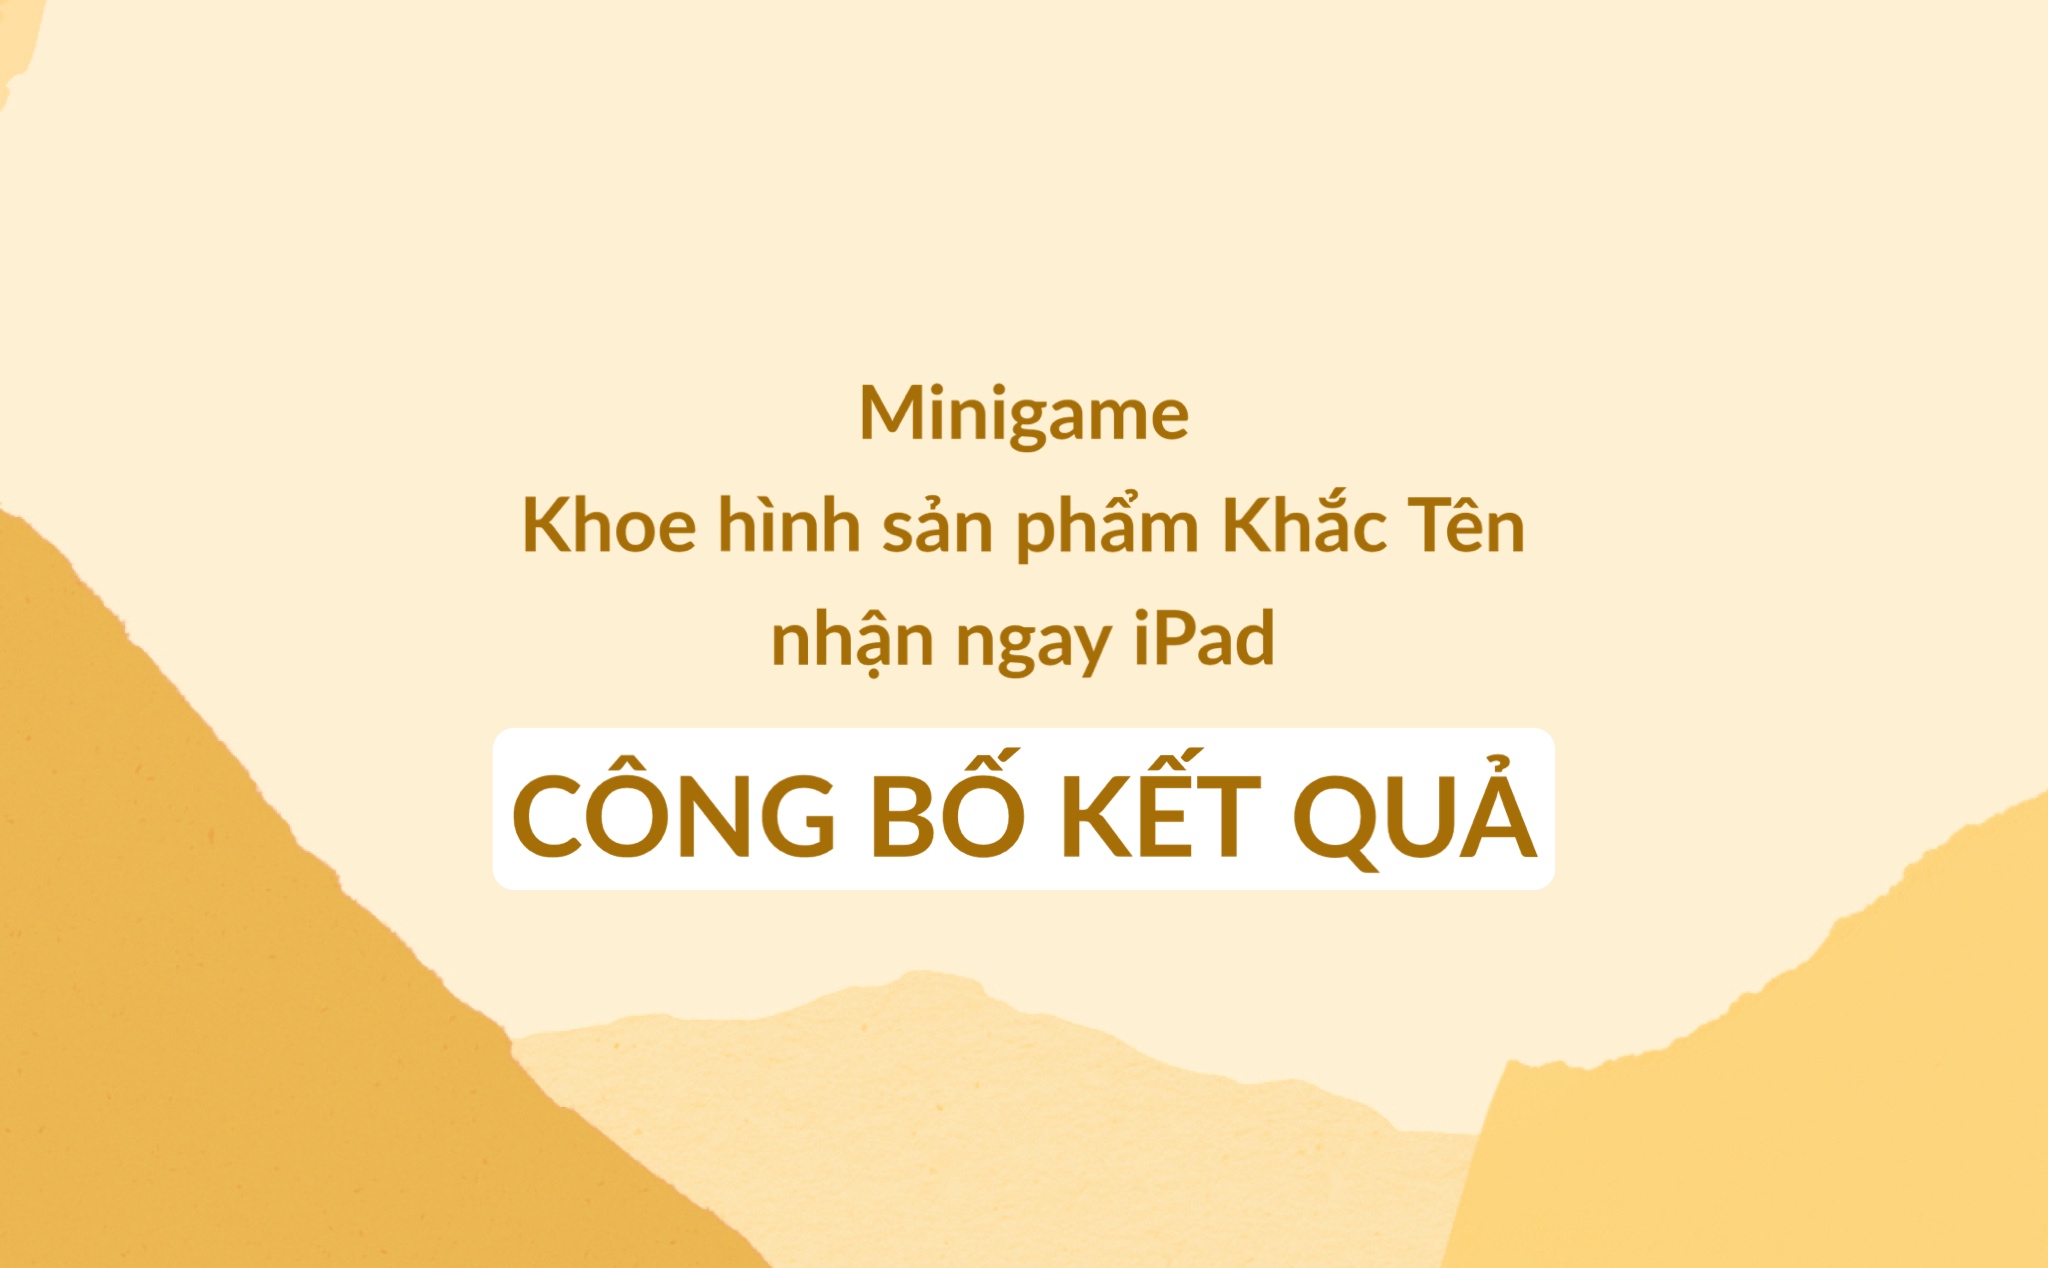 Công bố kết quả: Minigame Khoe hình sản phẩm Khắc Tên nhận ngay iPad